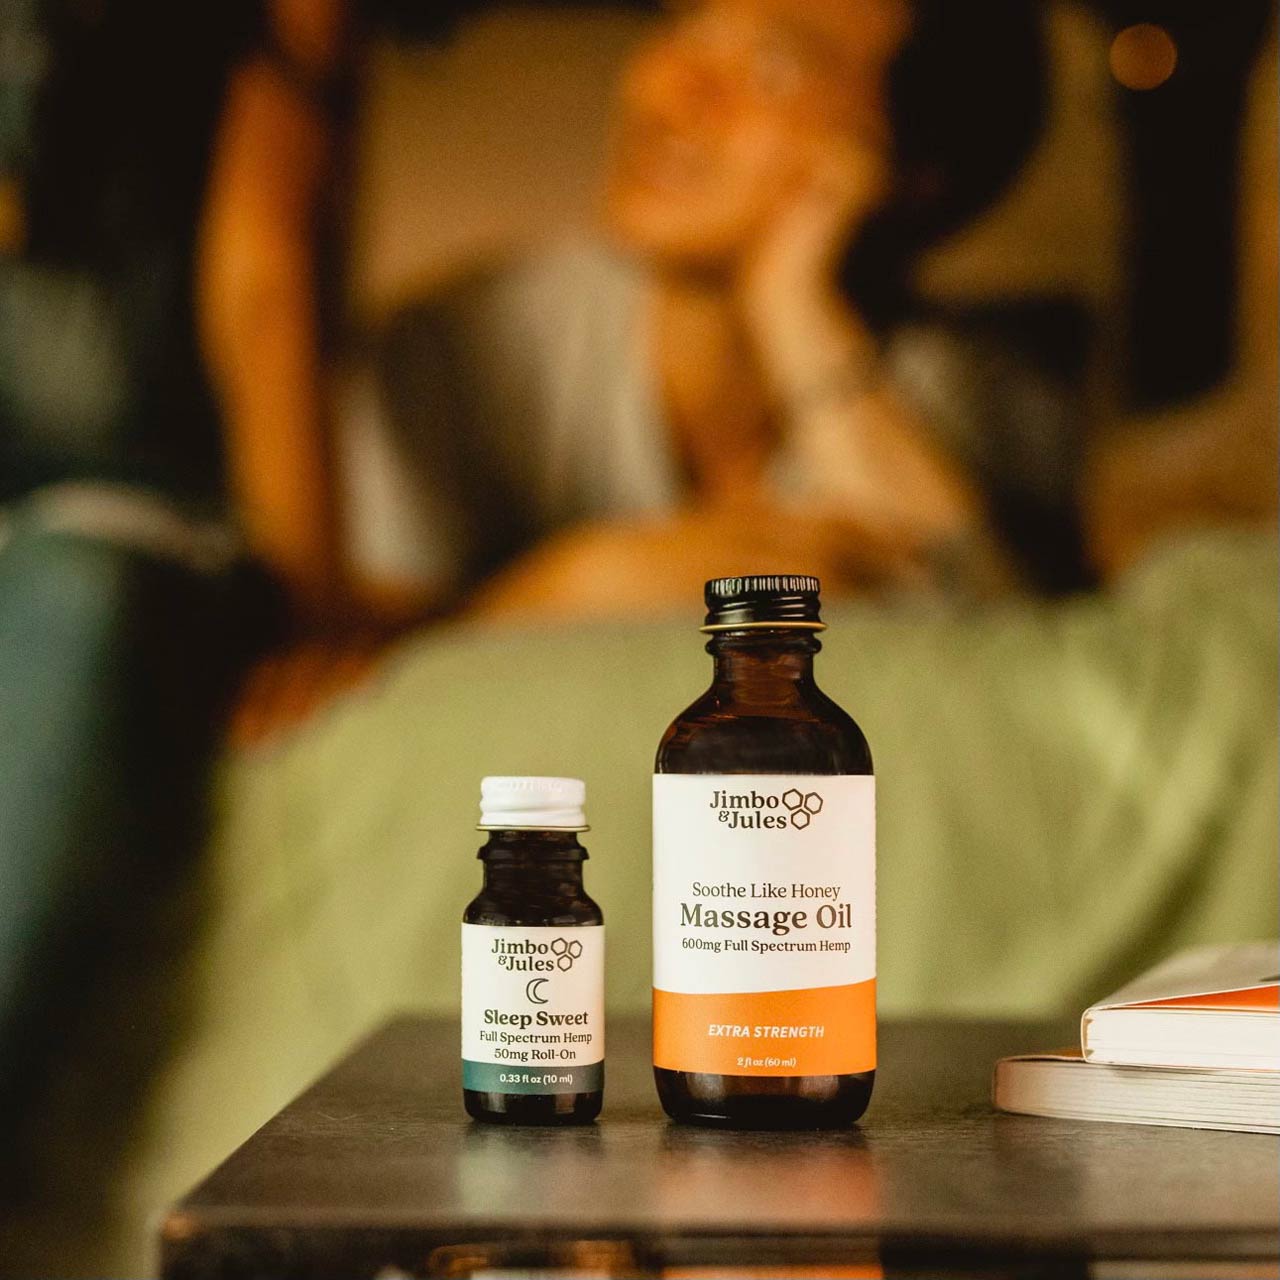 Two bottles of Full Spectrum Hemp oil for sleep disorders